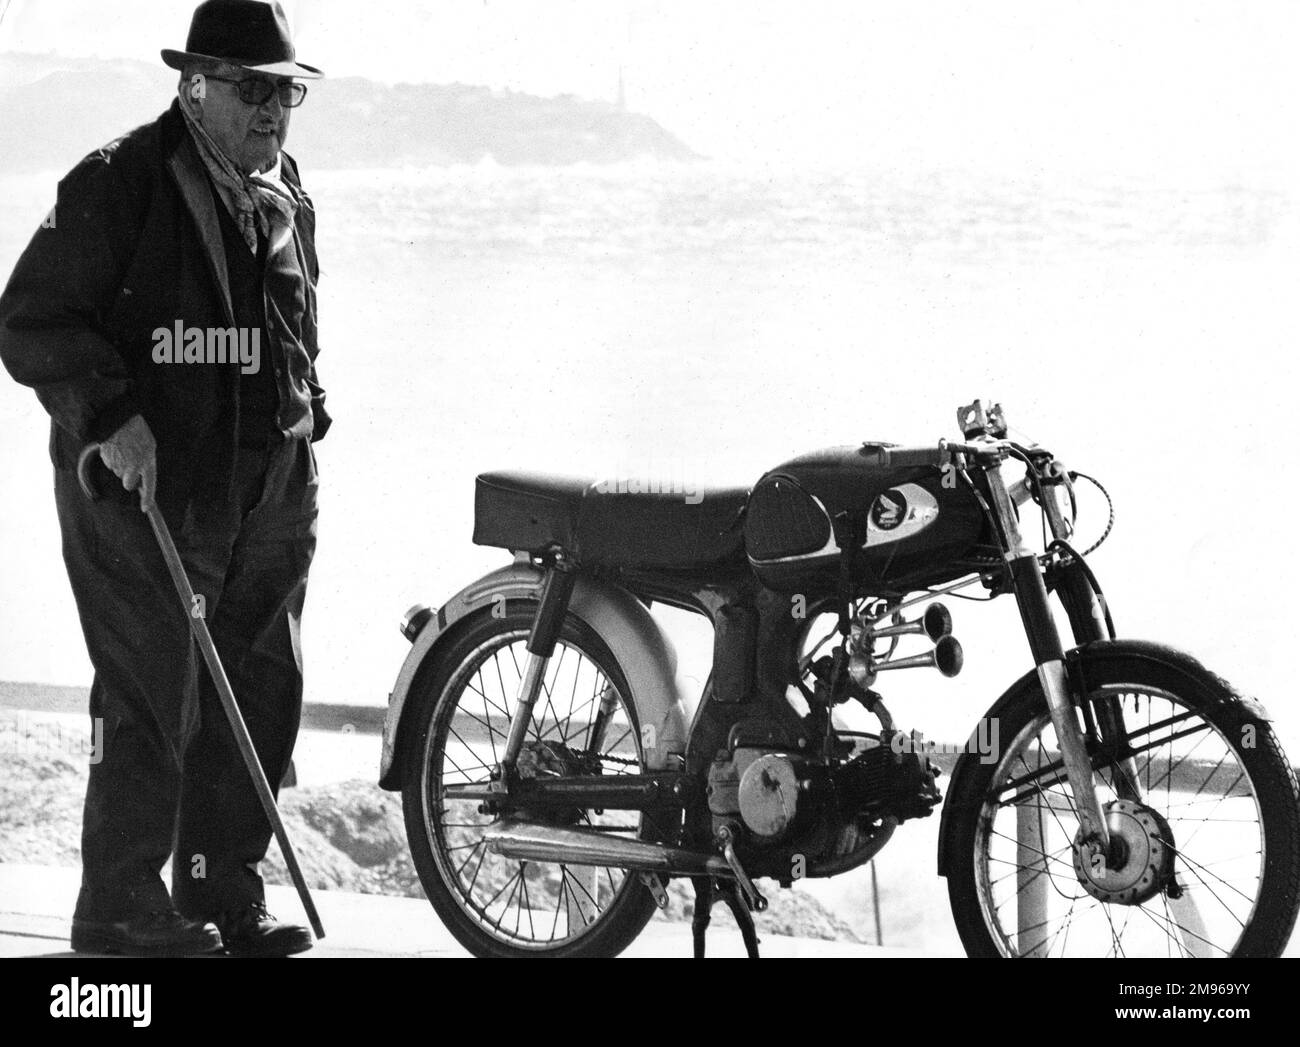 Ein alter Mann mit einem Gehstock, der neben einem Motorrad steht, das in der Nähe eines Strandes geparkt ist. Stockfoto